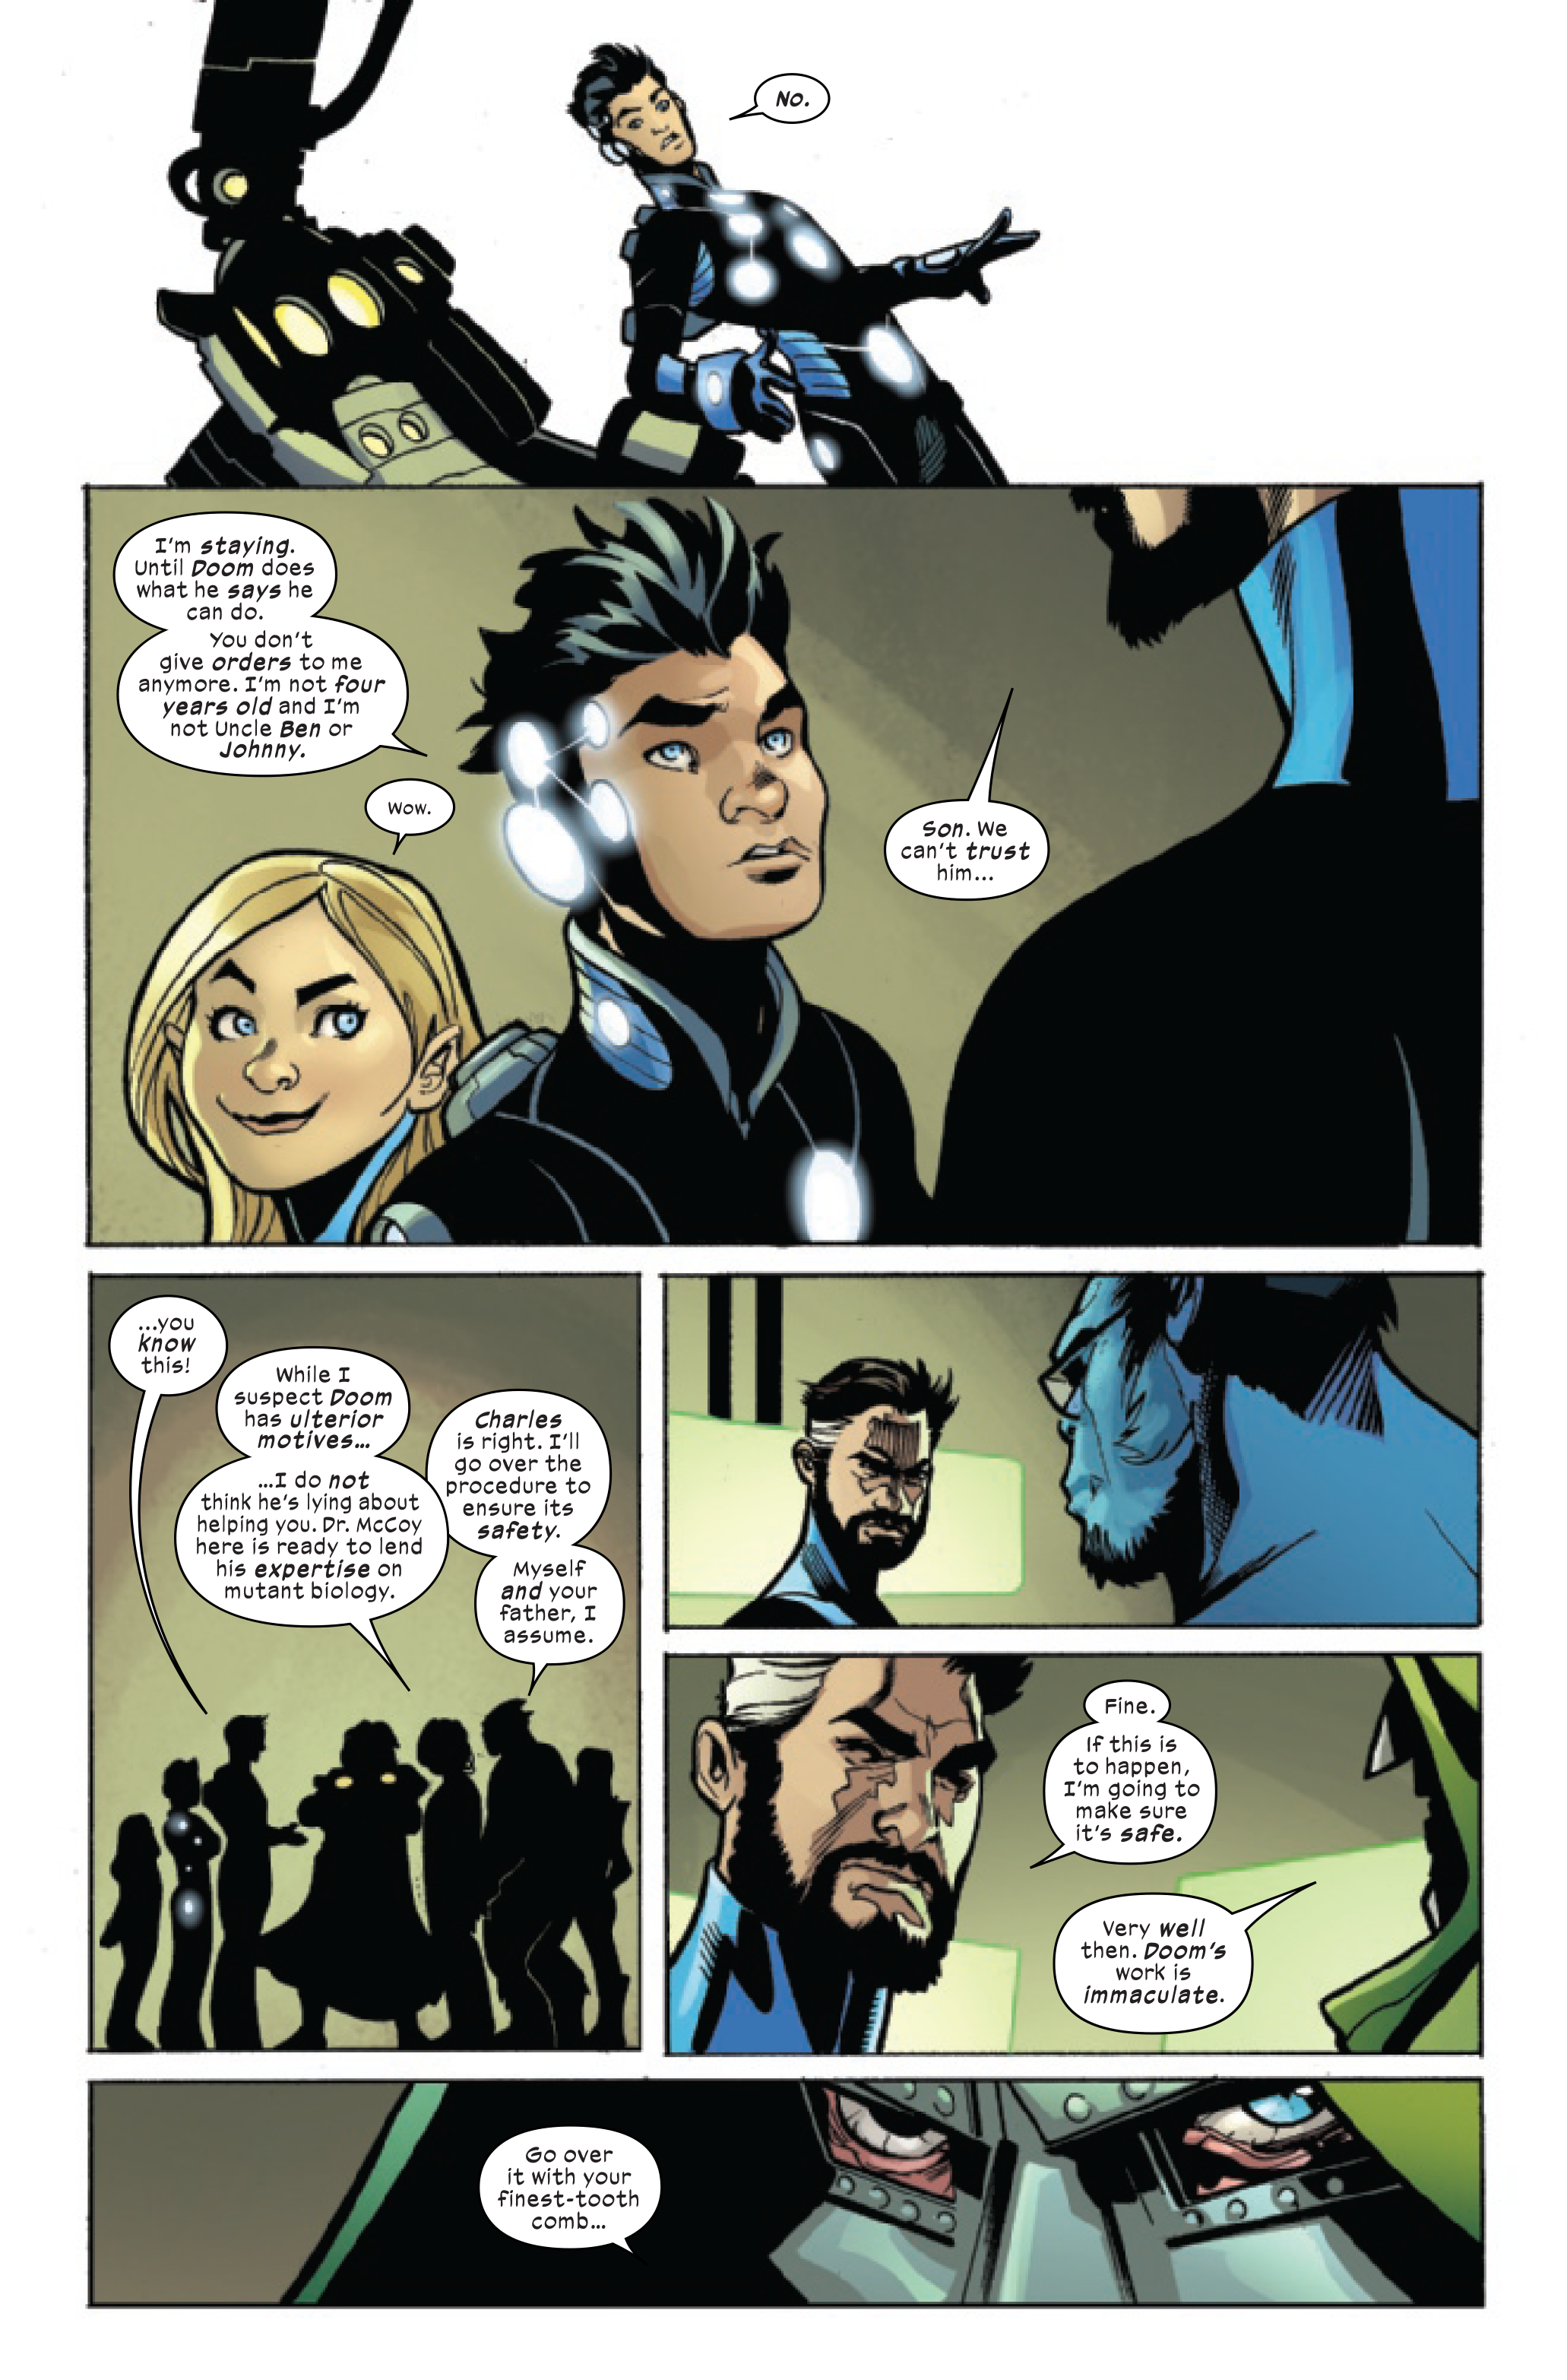 Franklin stands up to Mister Fantastic in X-Men/Fantastic Four #3